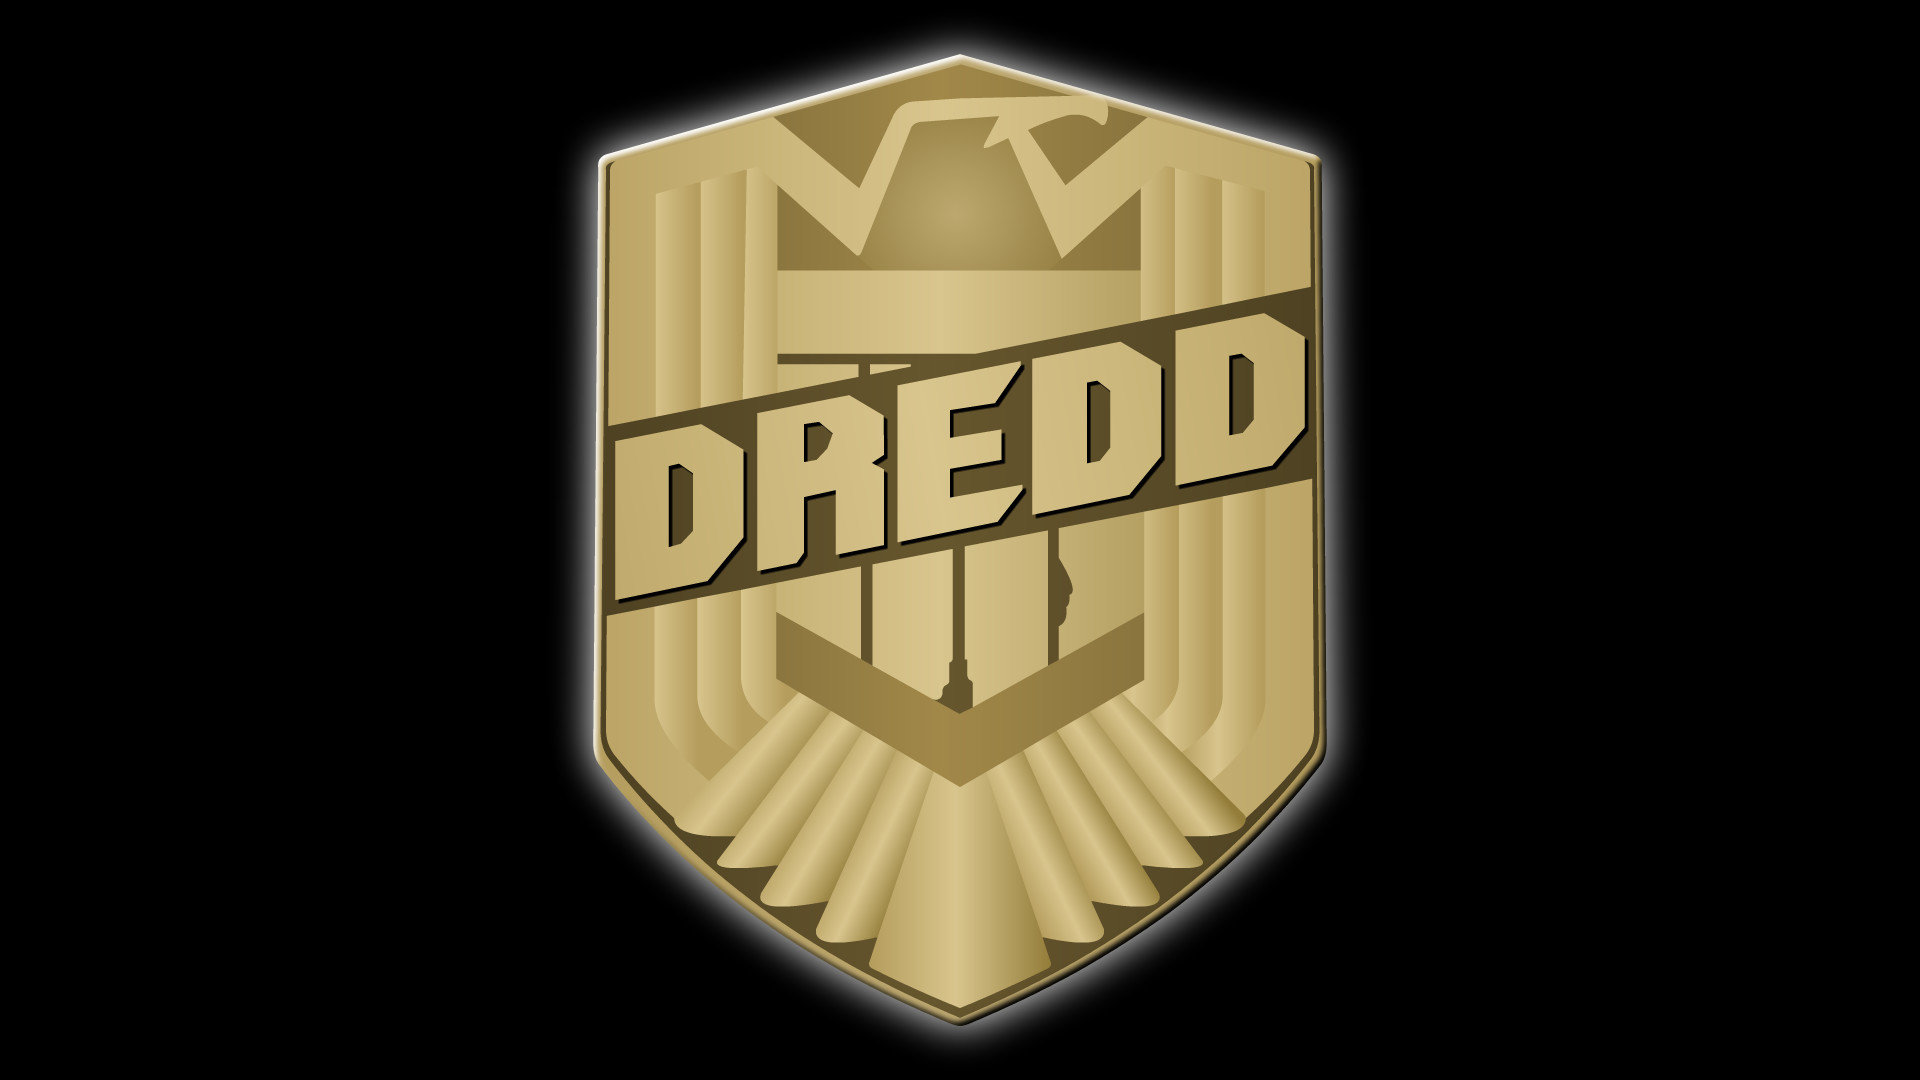 Download full hd 1920x1080 Judge Dredd desktop wallpaper ID:25173 for free